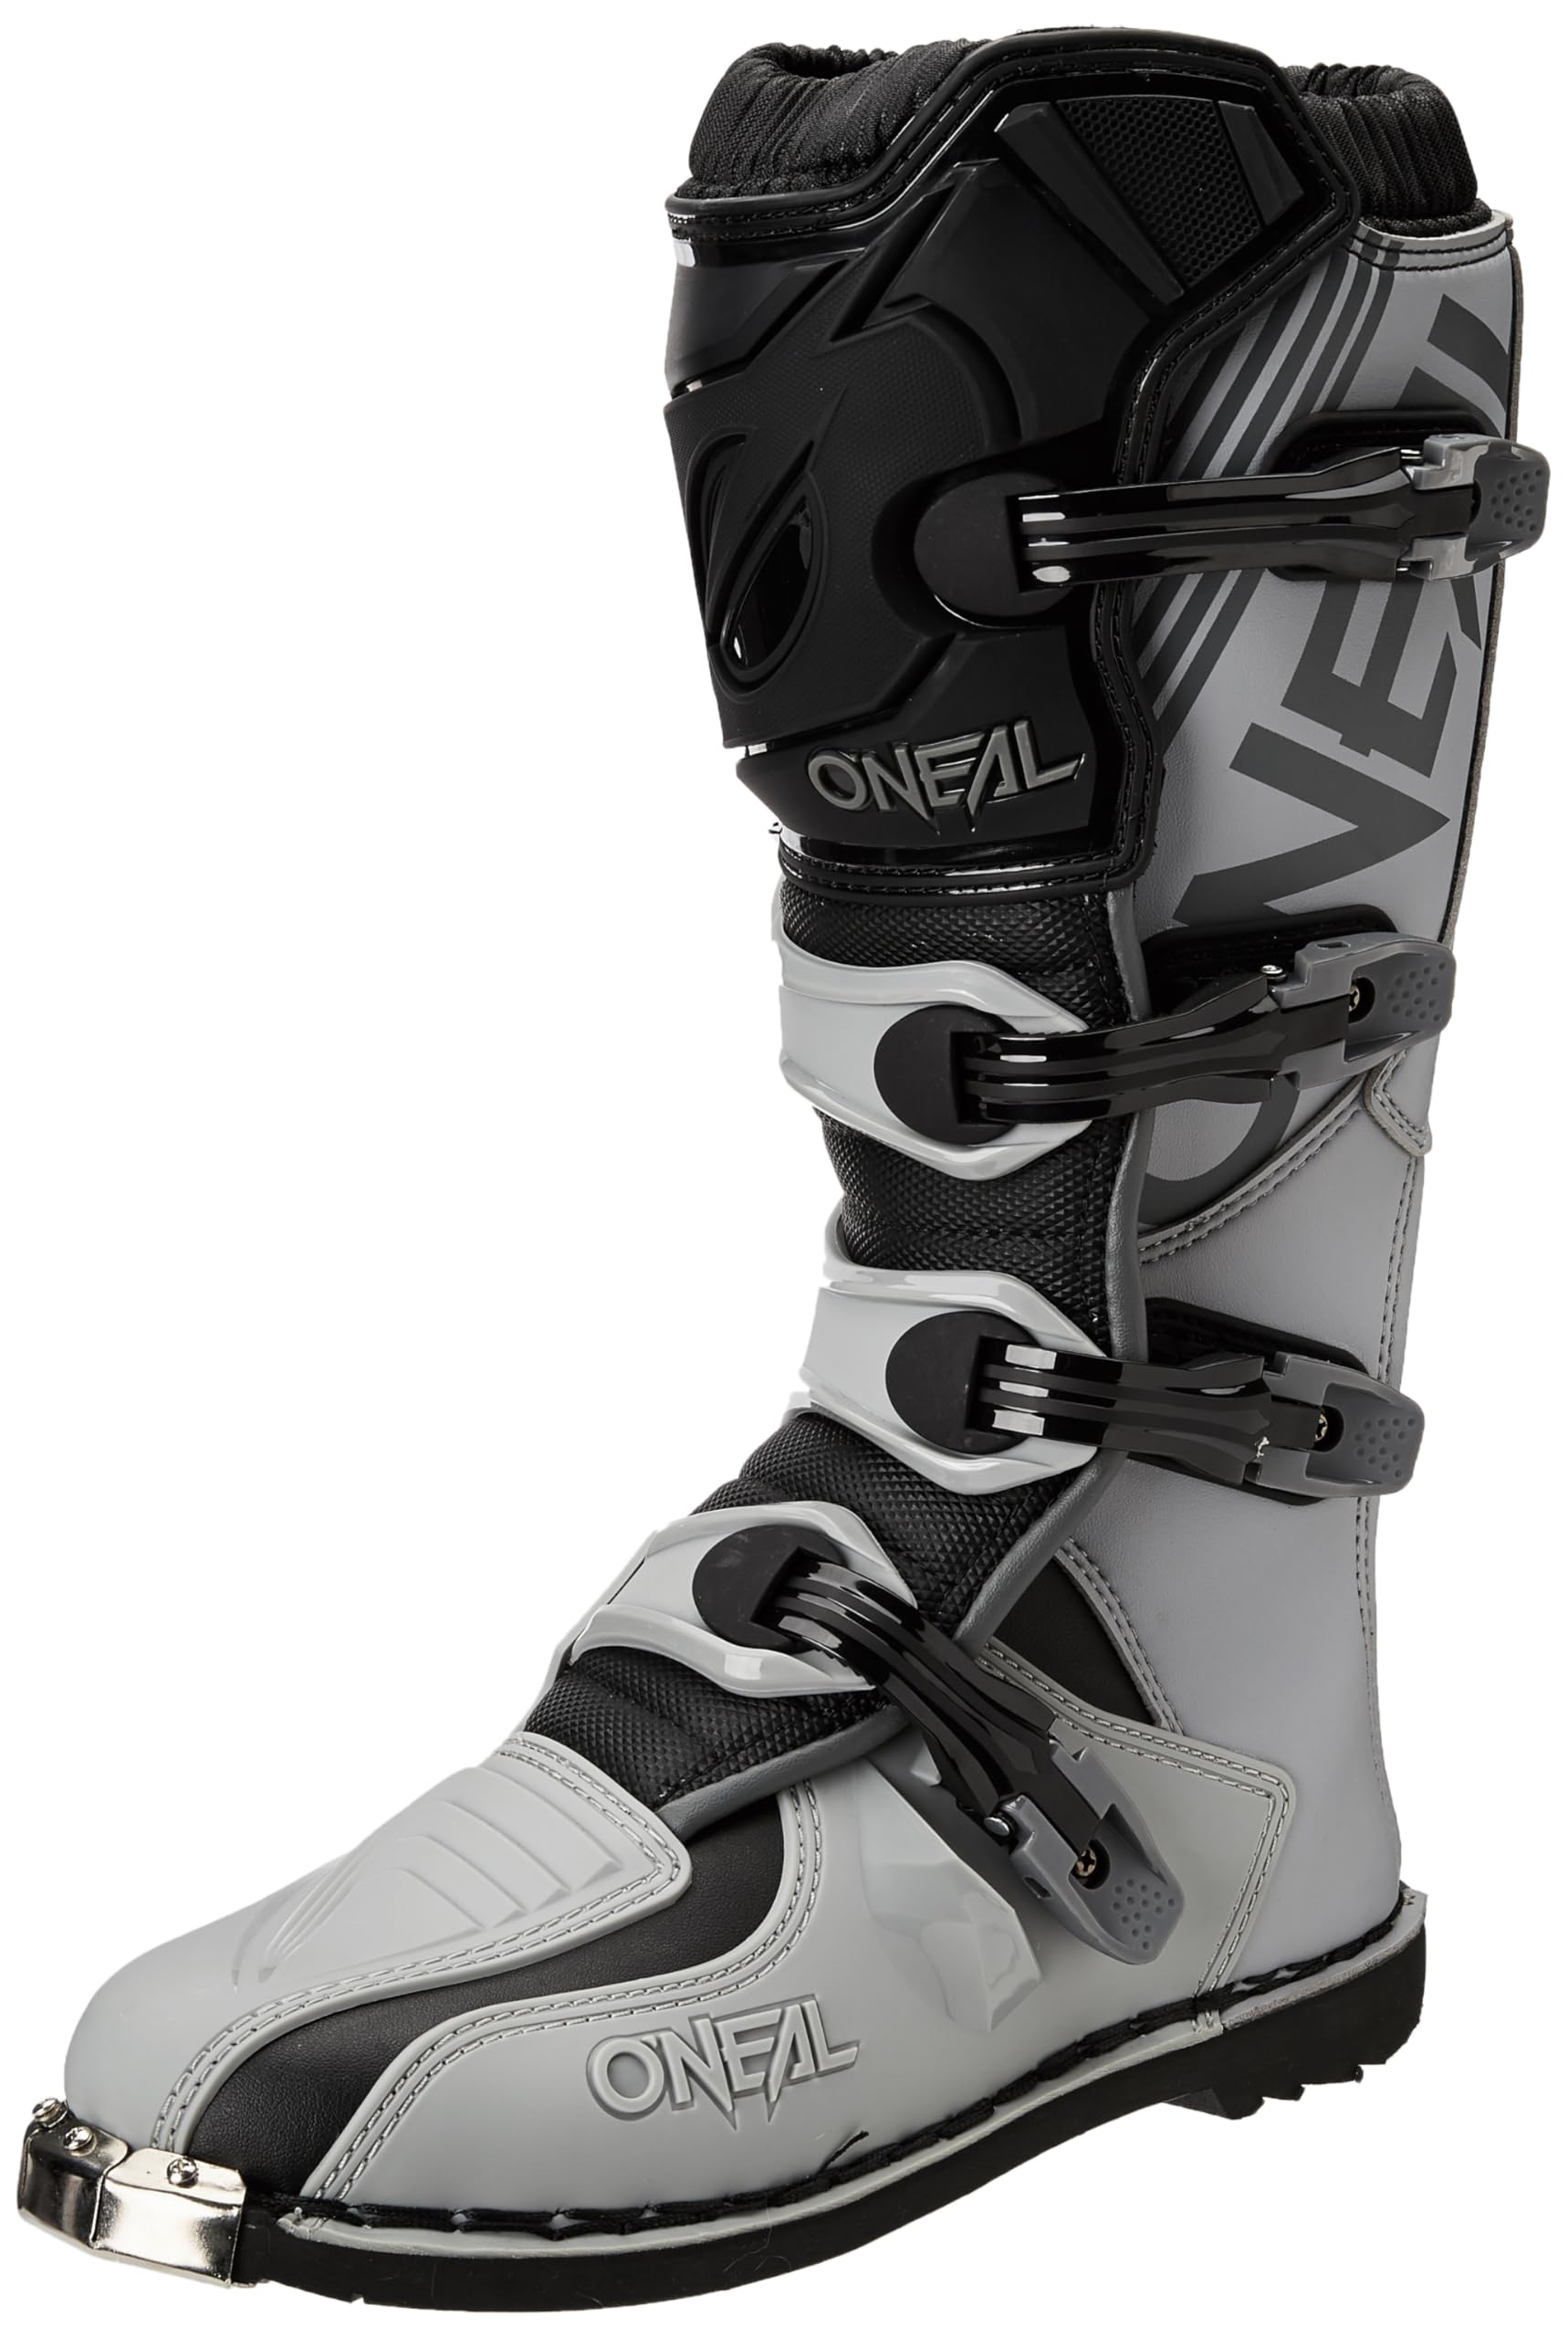 O'Neal Motocross-Stiefel für Kinder, MX Enduro, Metallsohlenschutz, leicht verstellbare Schnallen, Element Jugendstiefel von O'NEAL